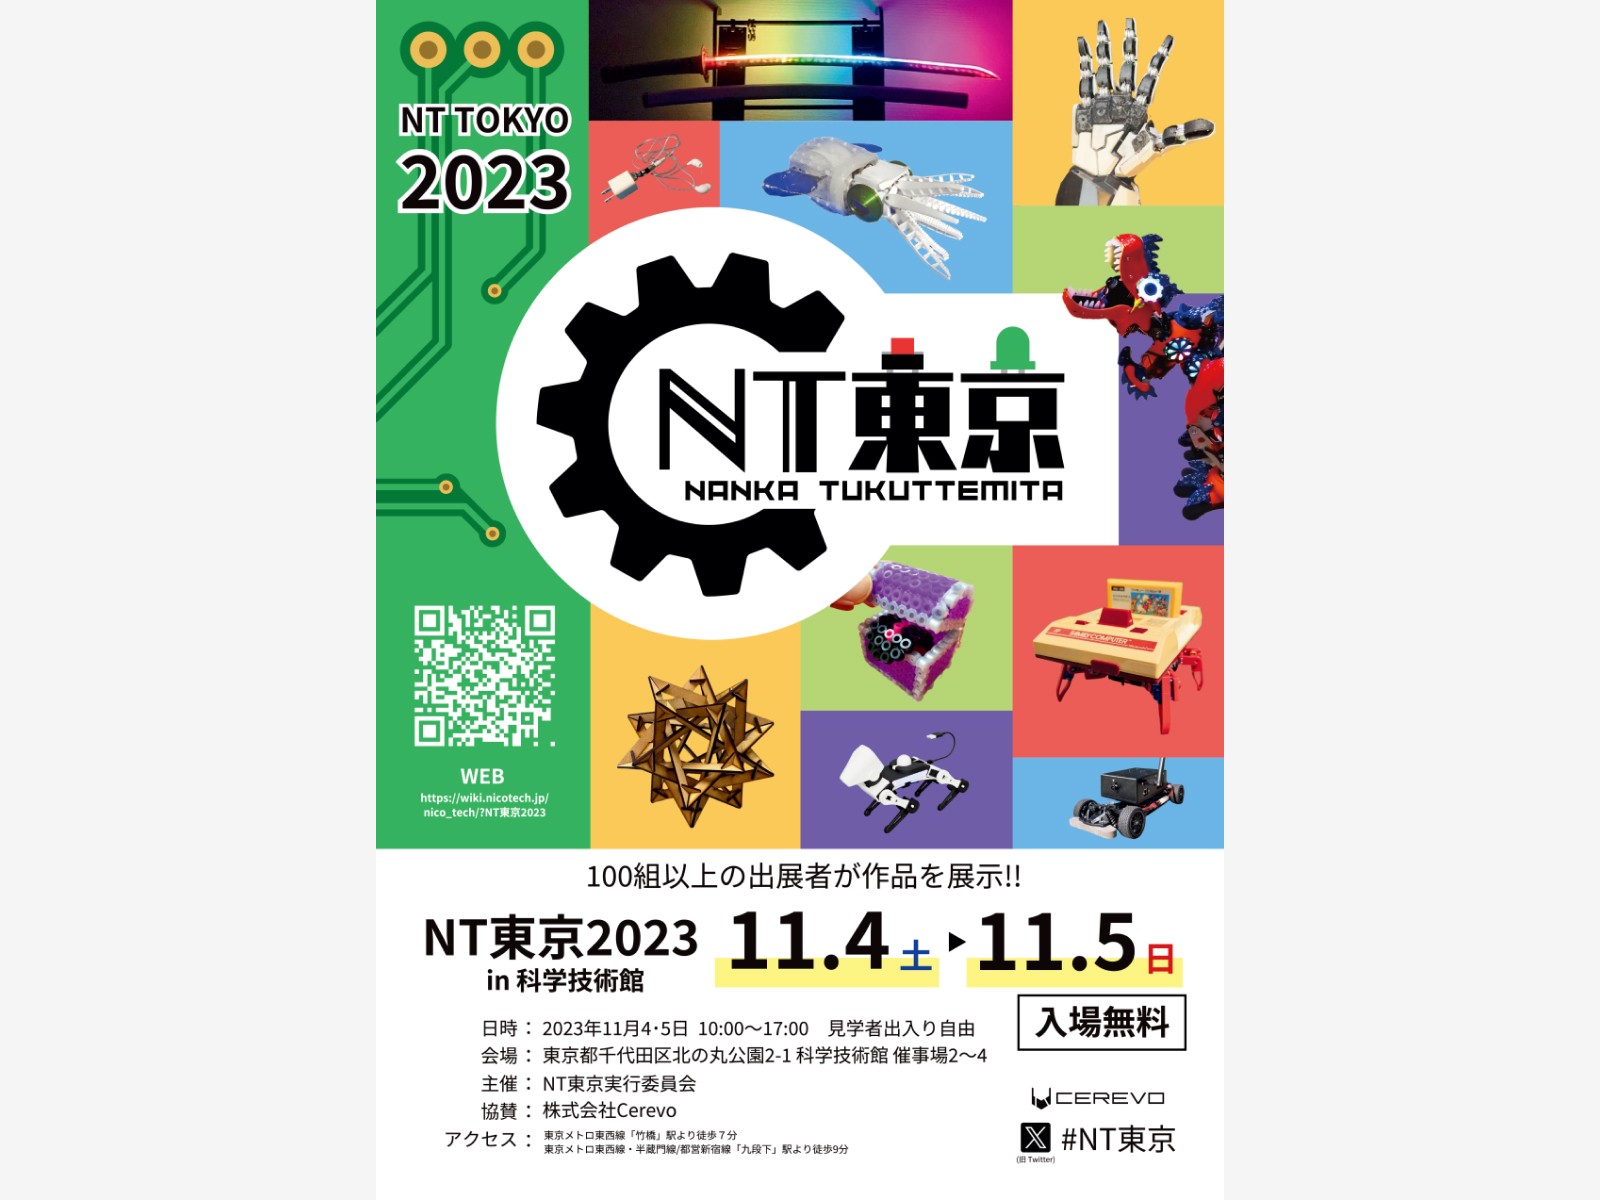 11/4-5で開催される、NT東京に出展します。